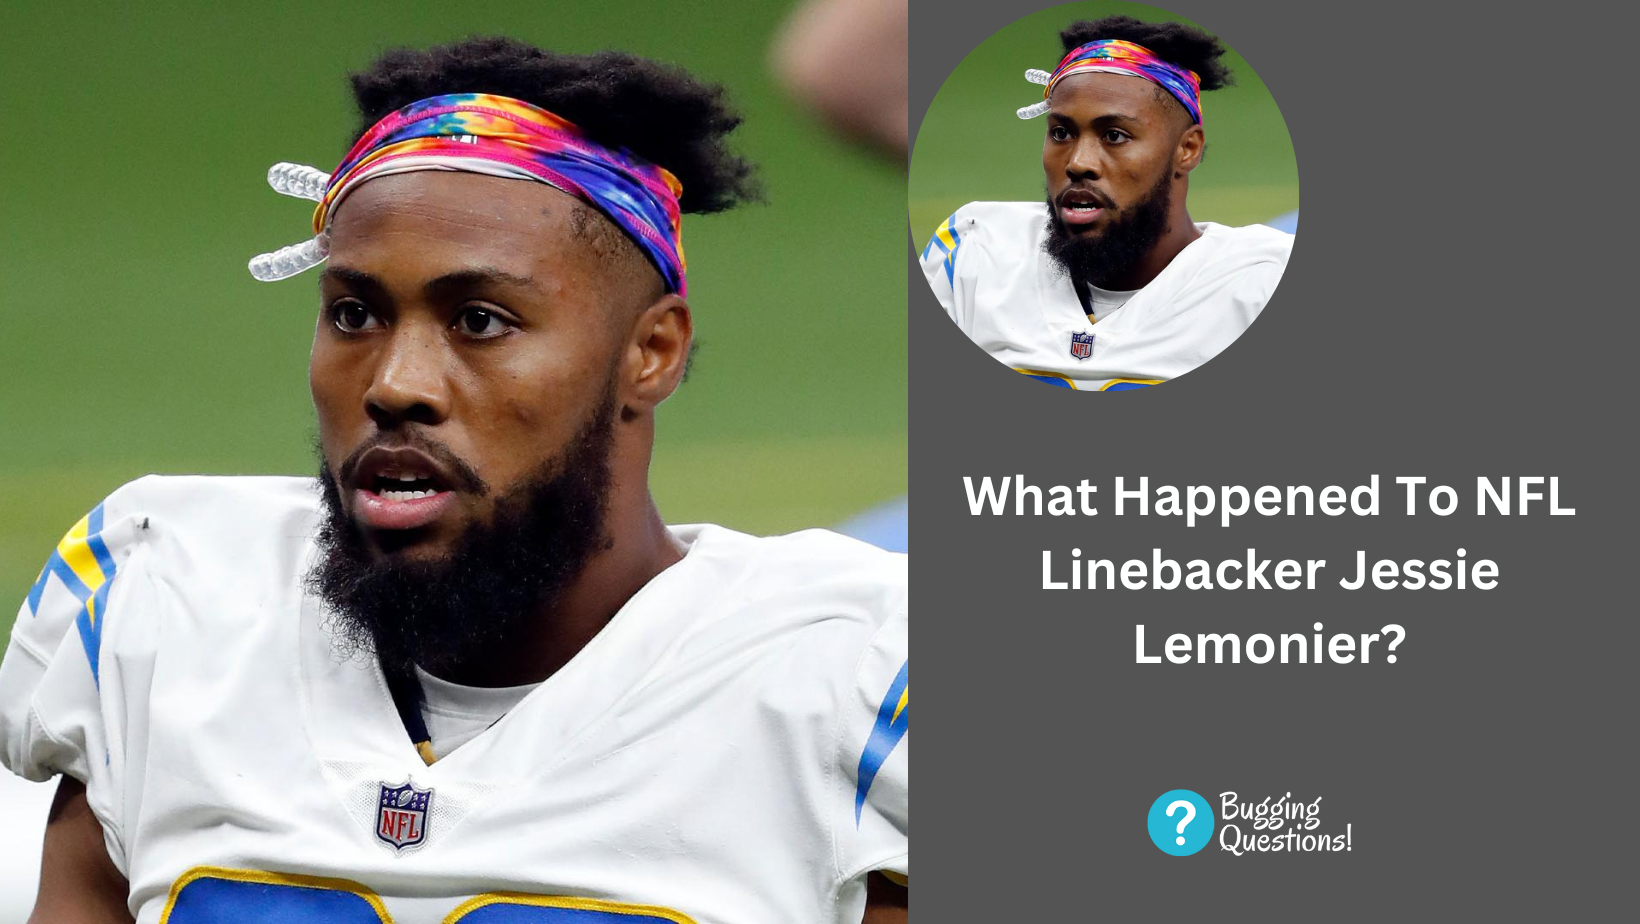 What Happened To NFL Linebacker Jessie Lemonier?